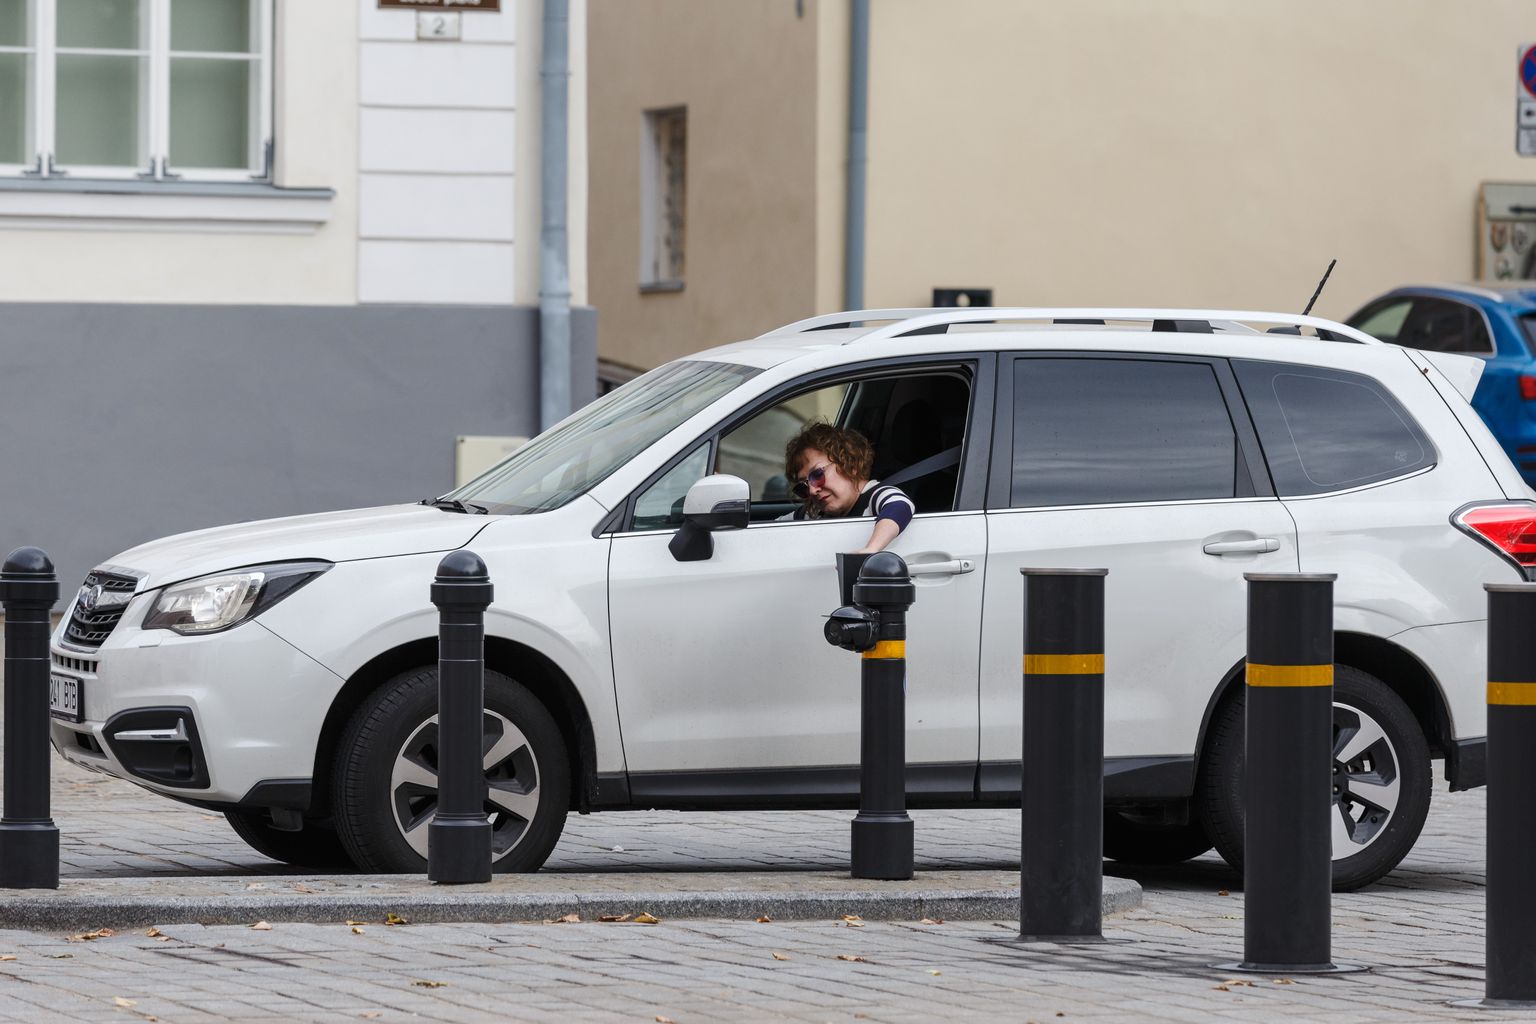 Endine riigikogulane Maire Aunaste 2018. aastal valge Subaru roolis.